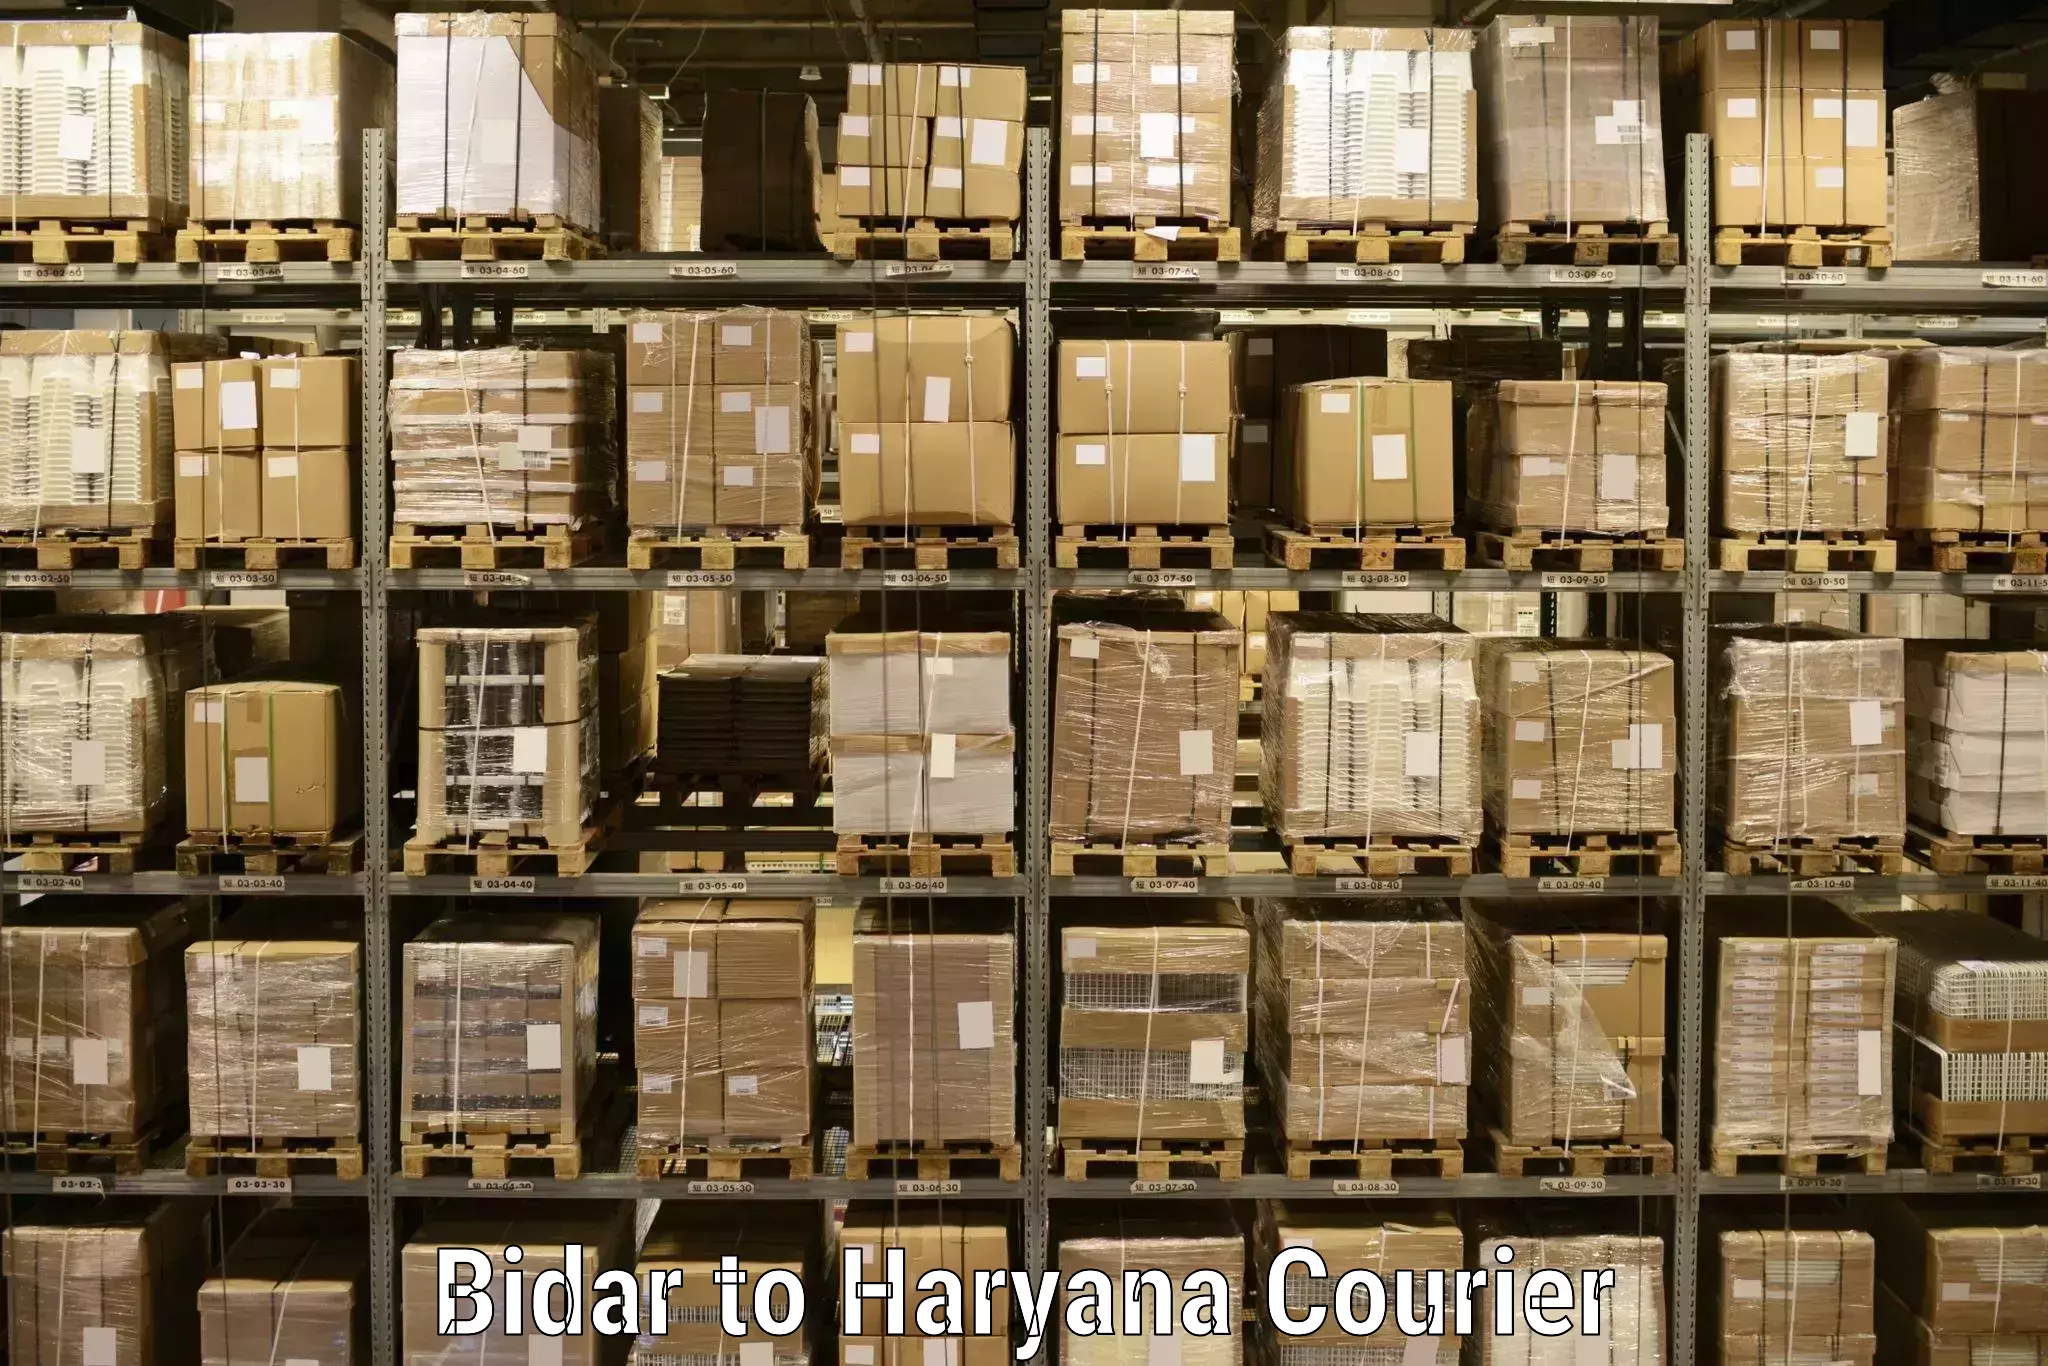 Premium courier solutions Bidar to Fatehabad